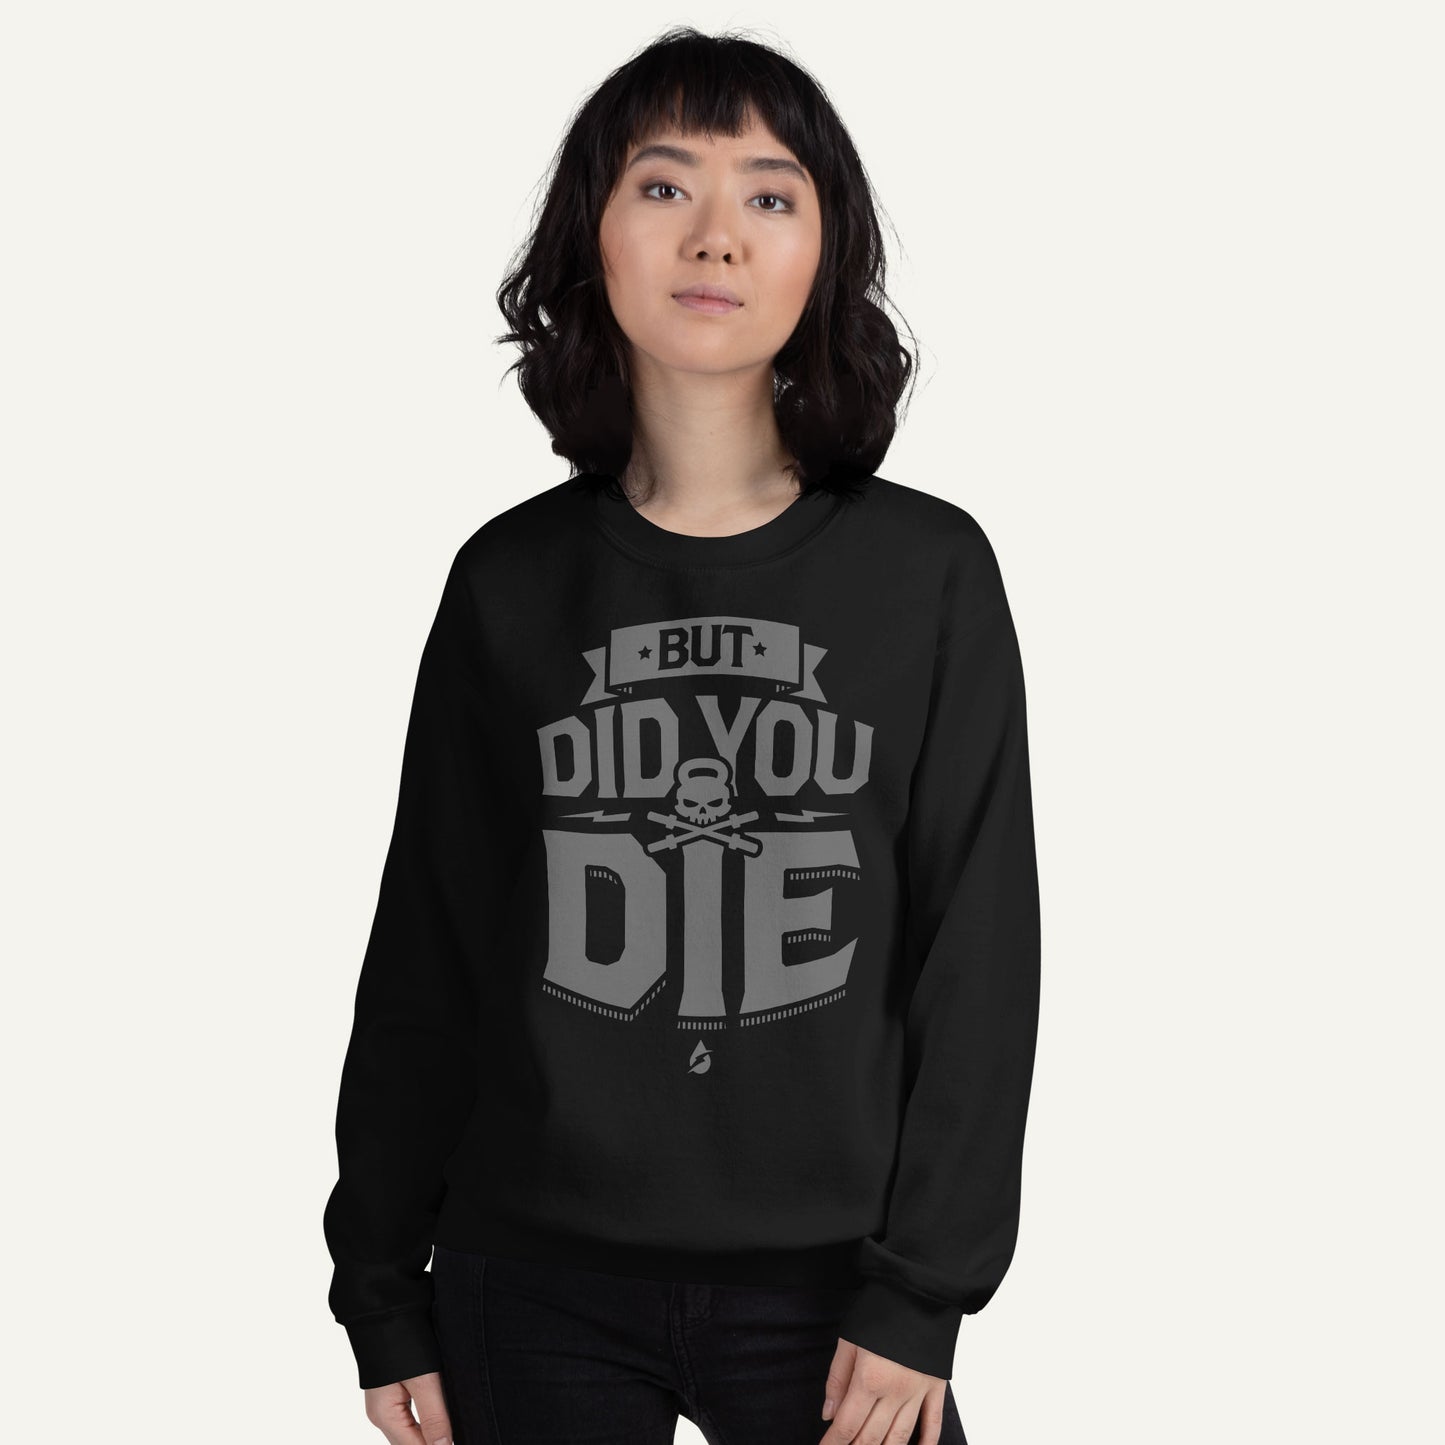 But Did You Die Sweatshirt